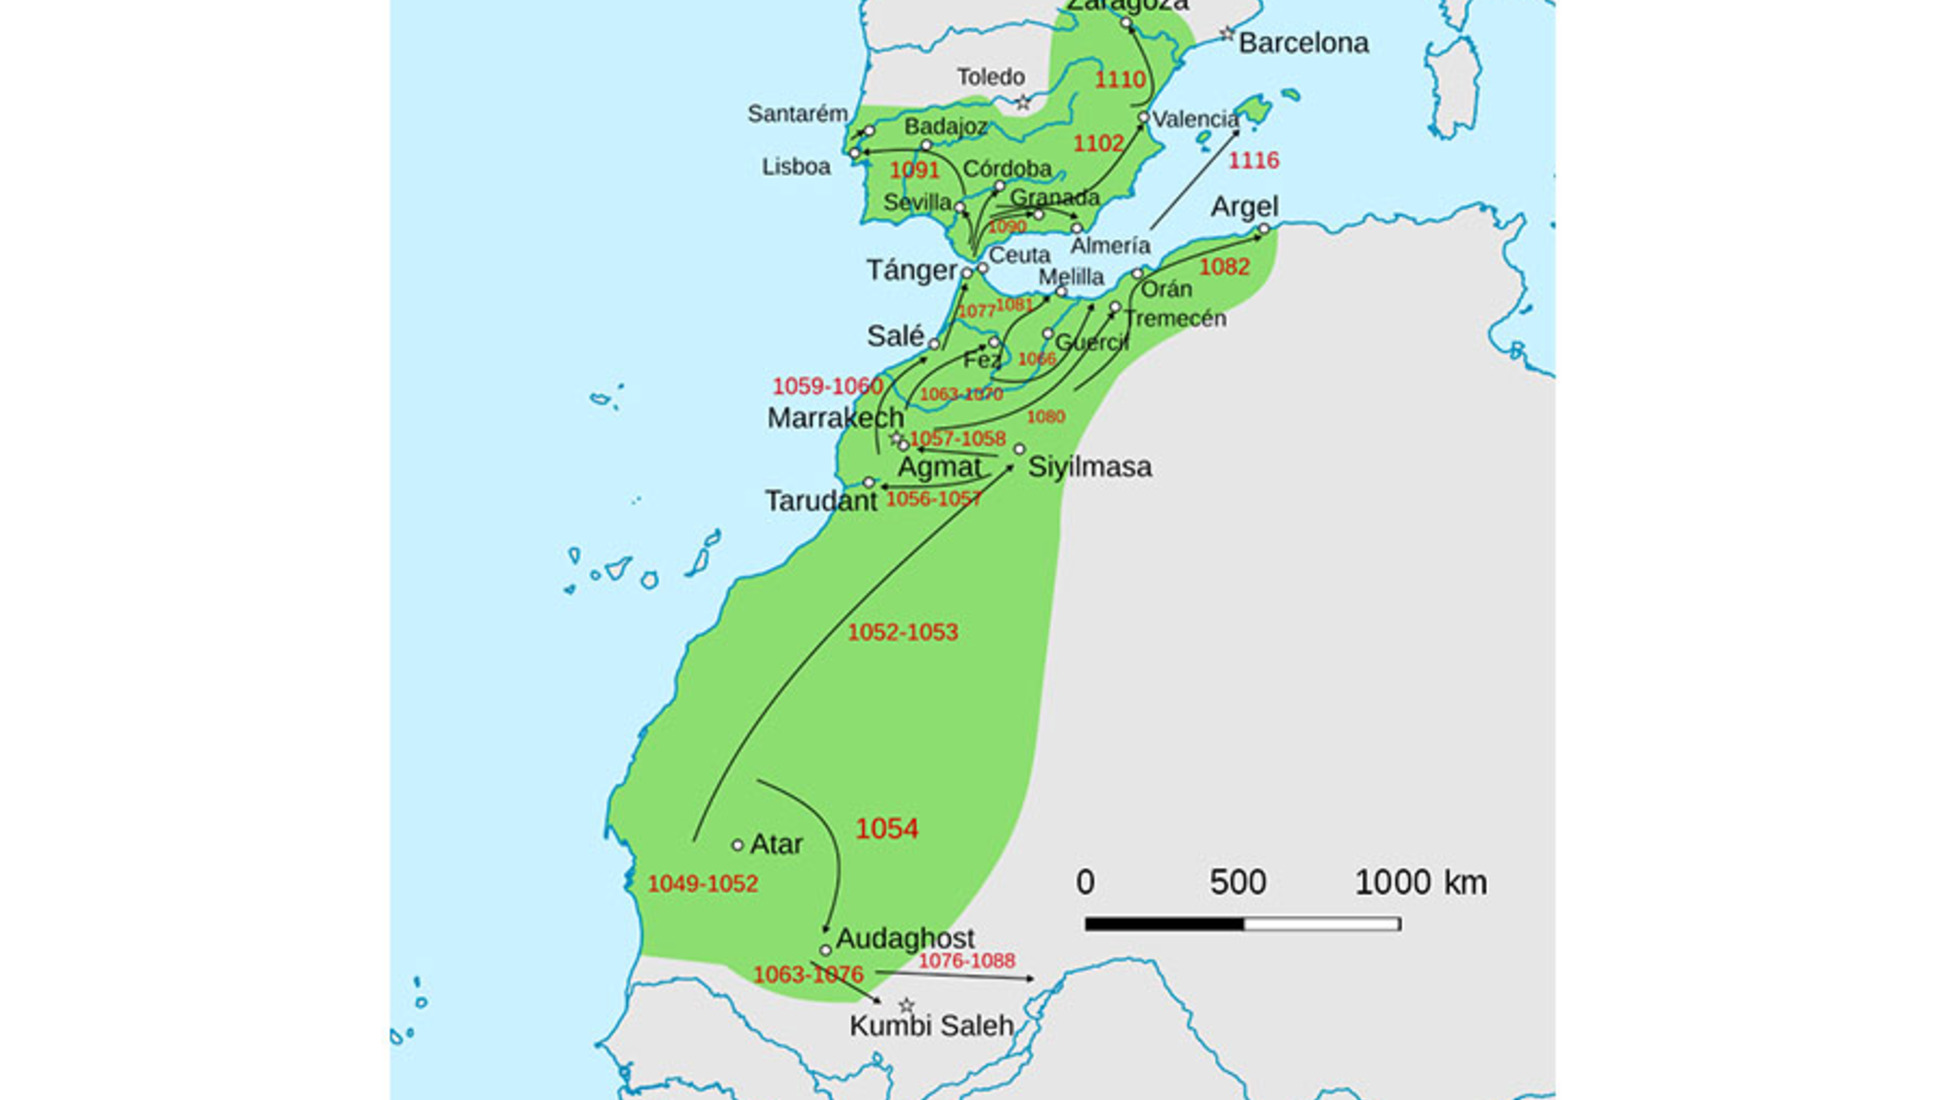 Mapa do Estado Almorávida em seu apogeu de expansão territorial. 